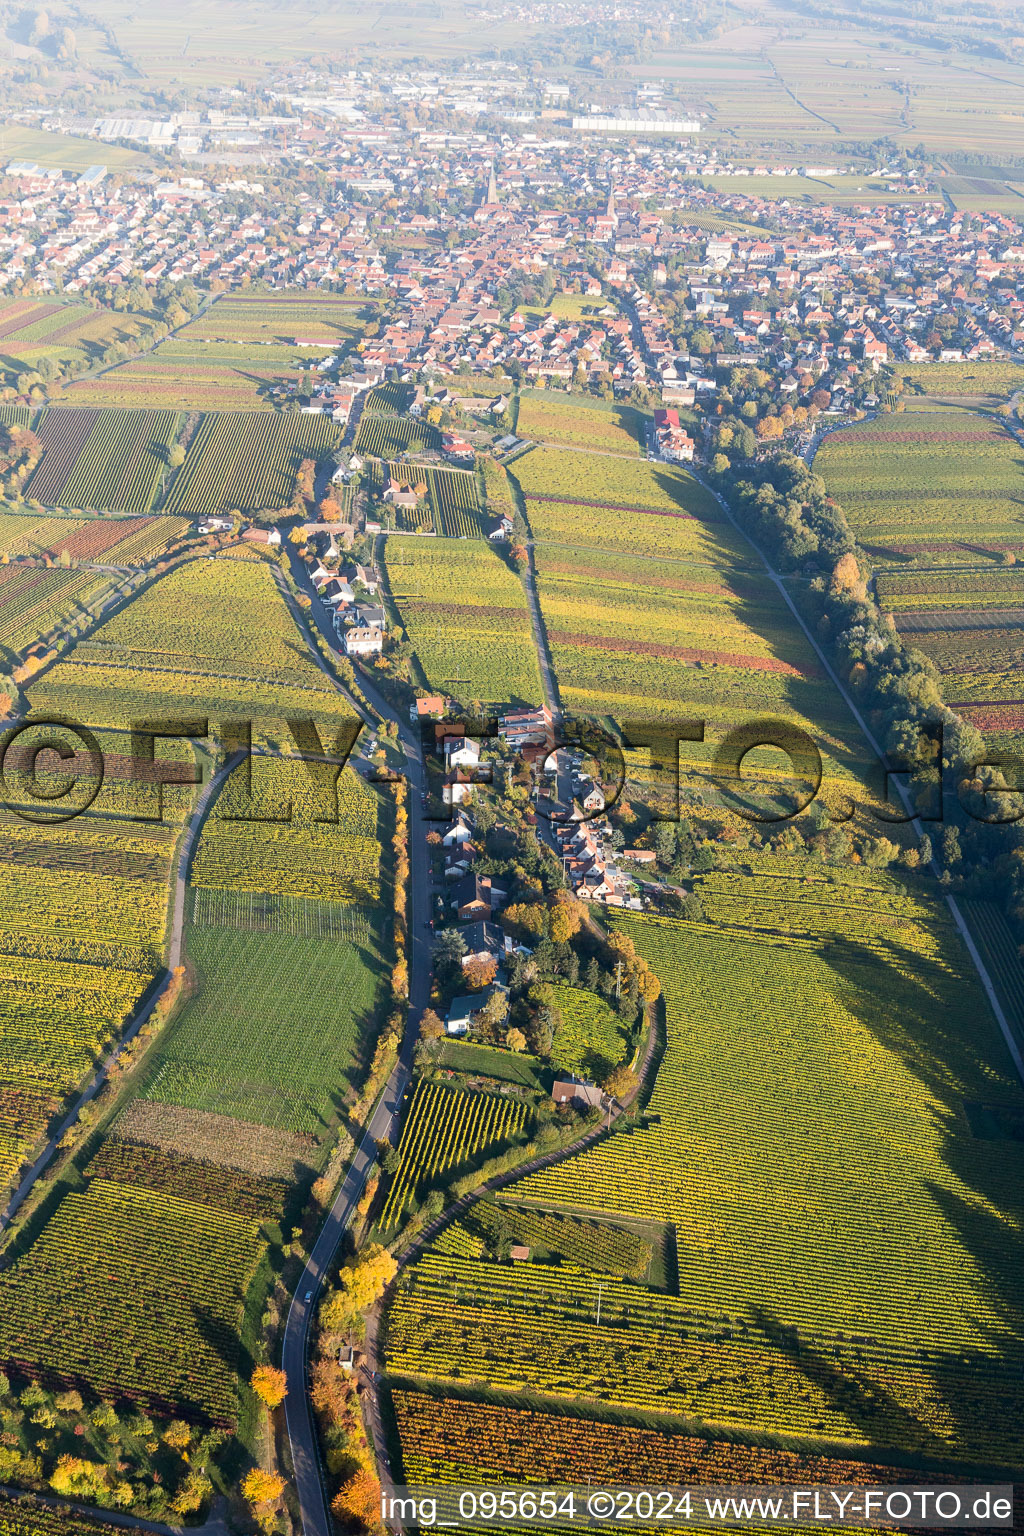 Vue aérienne de Paysage viticole des domaines viticoles de l'arrondissement d'habitation à Edenkoben dans le département Rhénanie-Palatinat, Allemagne